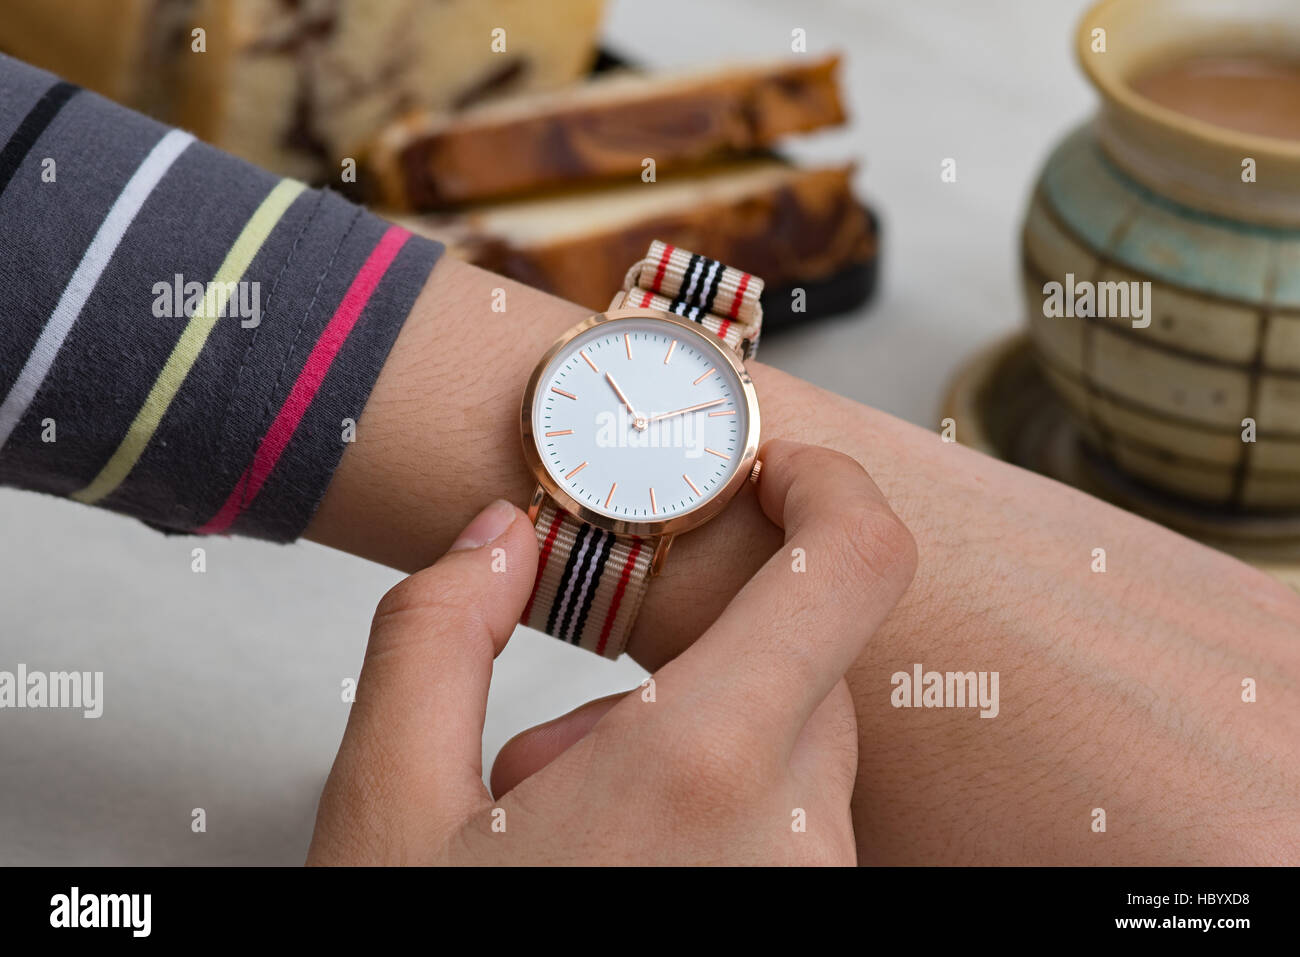 Chica de la mano con los relojes de pulsera en el coffee break frente de chocolate caliente y pastel Foto de stock